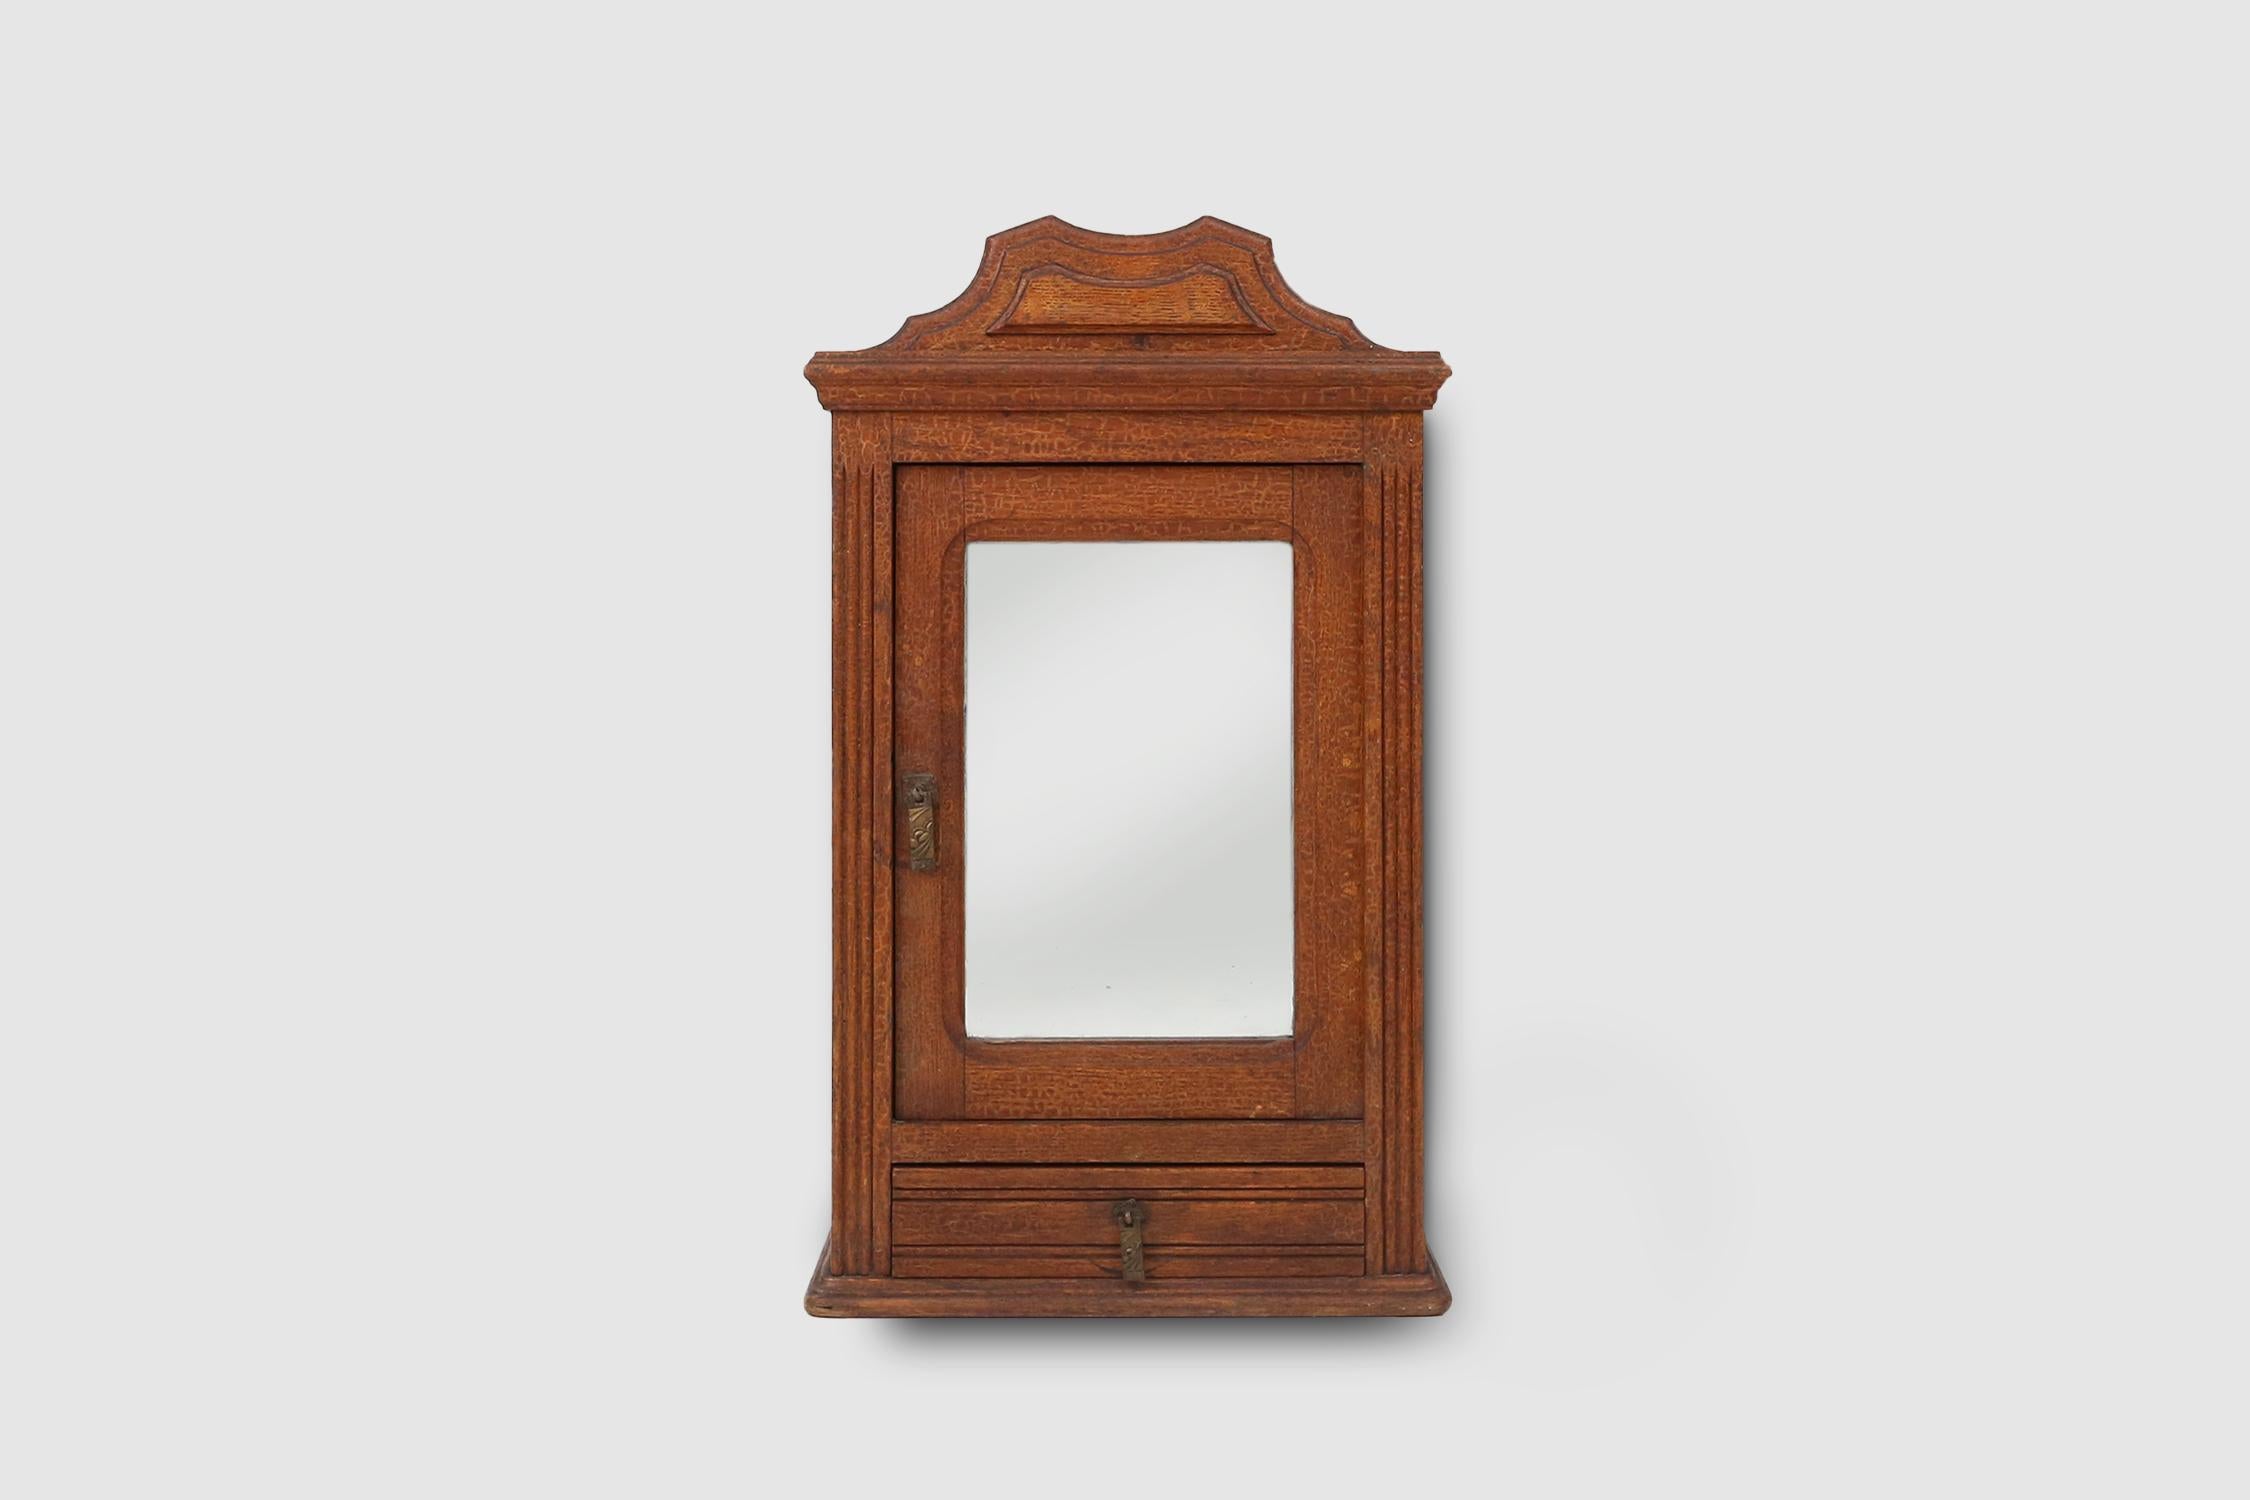 Frankreich / 1900 / Medizin- oder Rasierschrank / Holz und Spiegel / rustikal / Mitte des Jahrhunderts

Eleganter Medizin- oder Rasierschrank, hergestellt in Frankreich, ca. 1900. Der kleine Schrank hat eine Spiegeltür und eine kleine Schublade